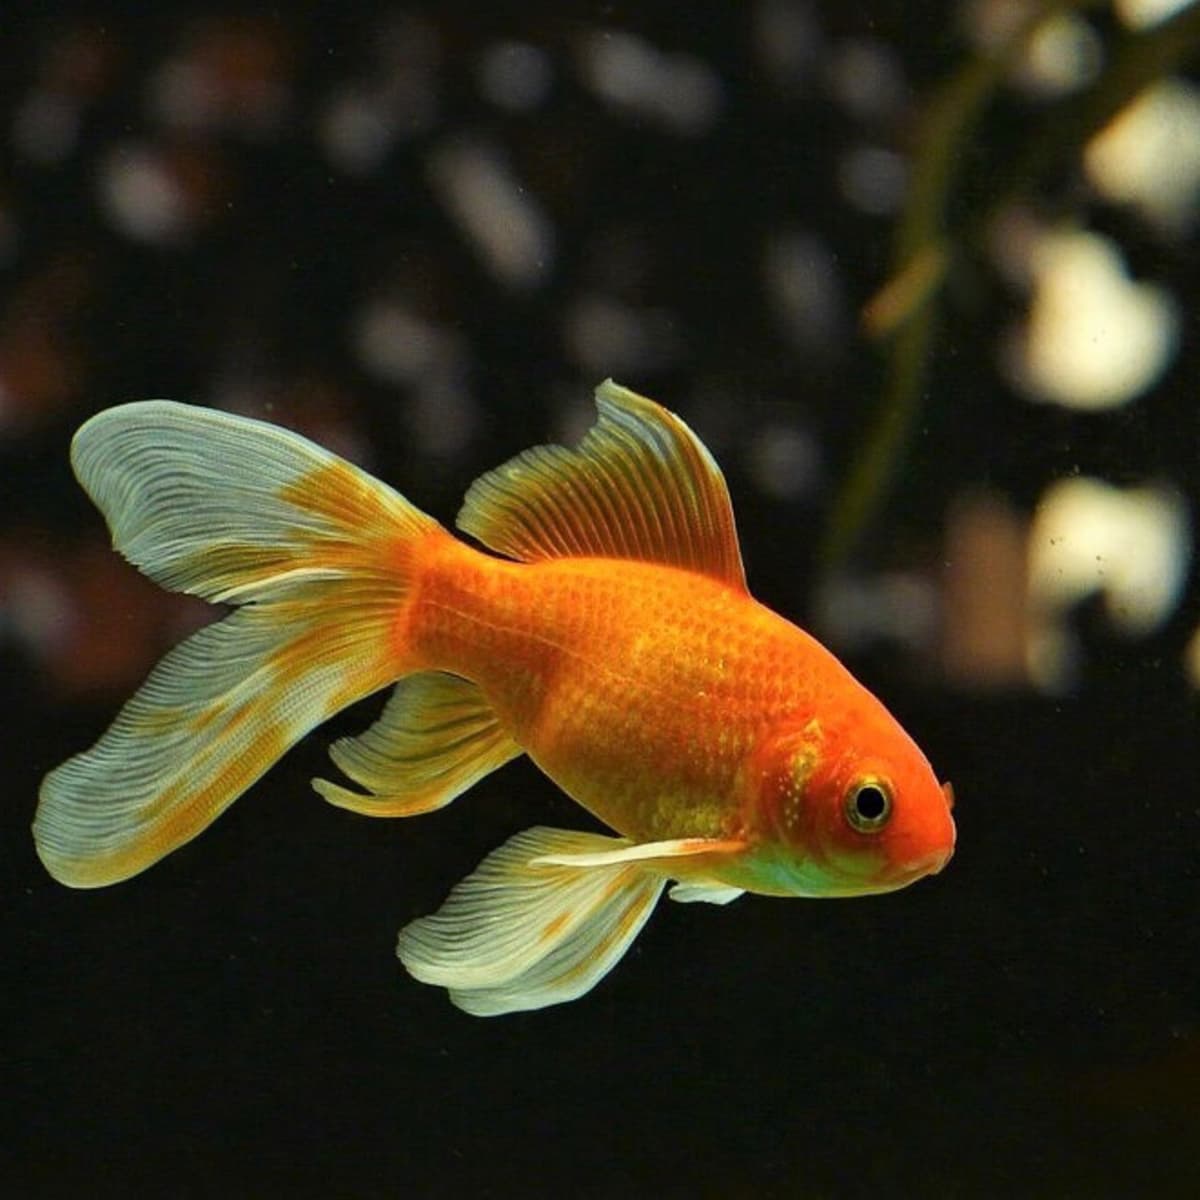 Pet Fish Facts For Kids, Aquarium Fish Care